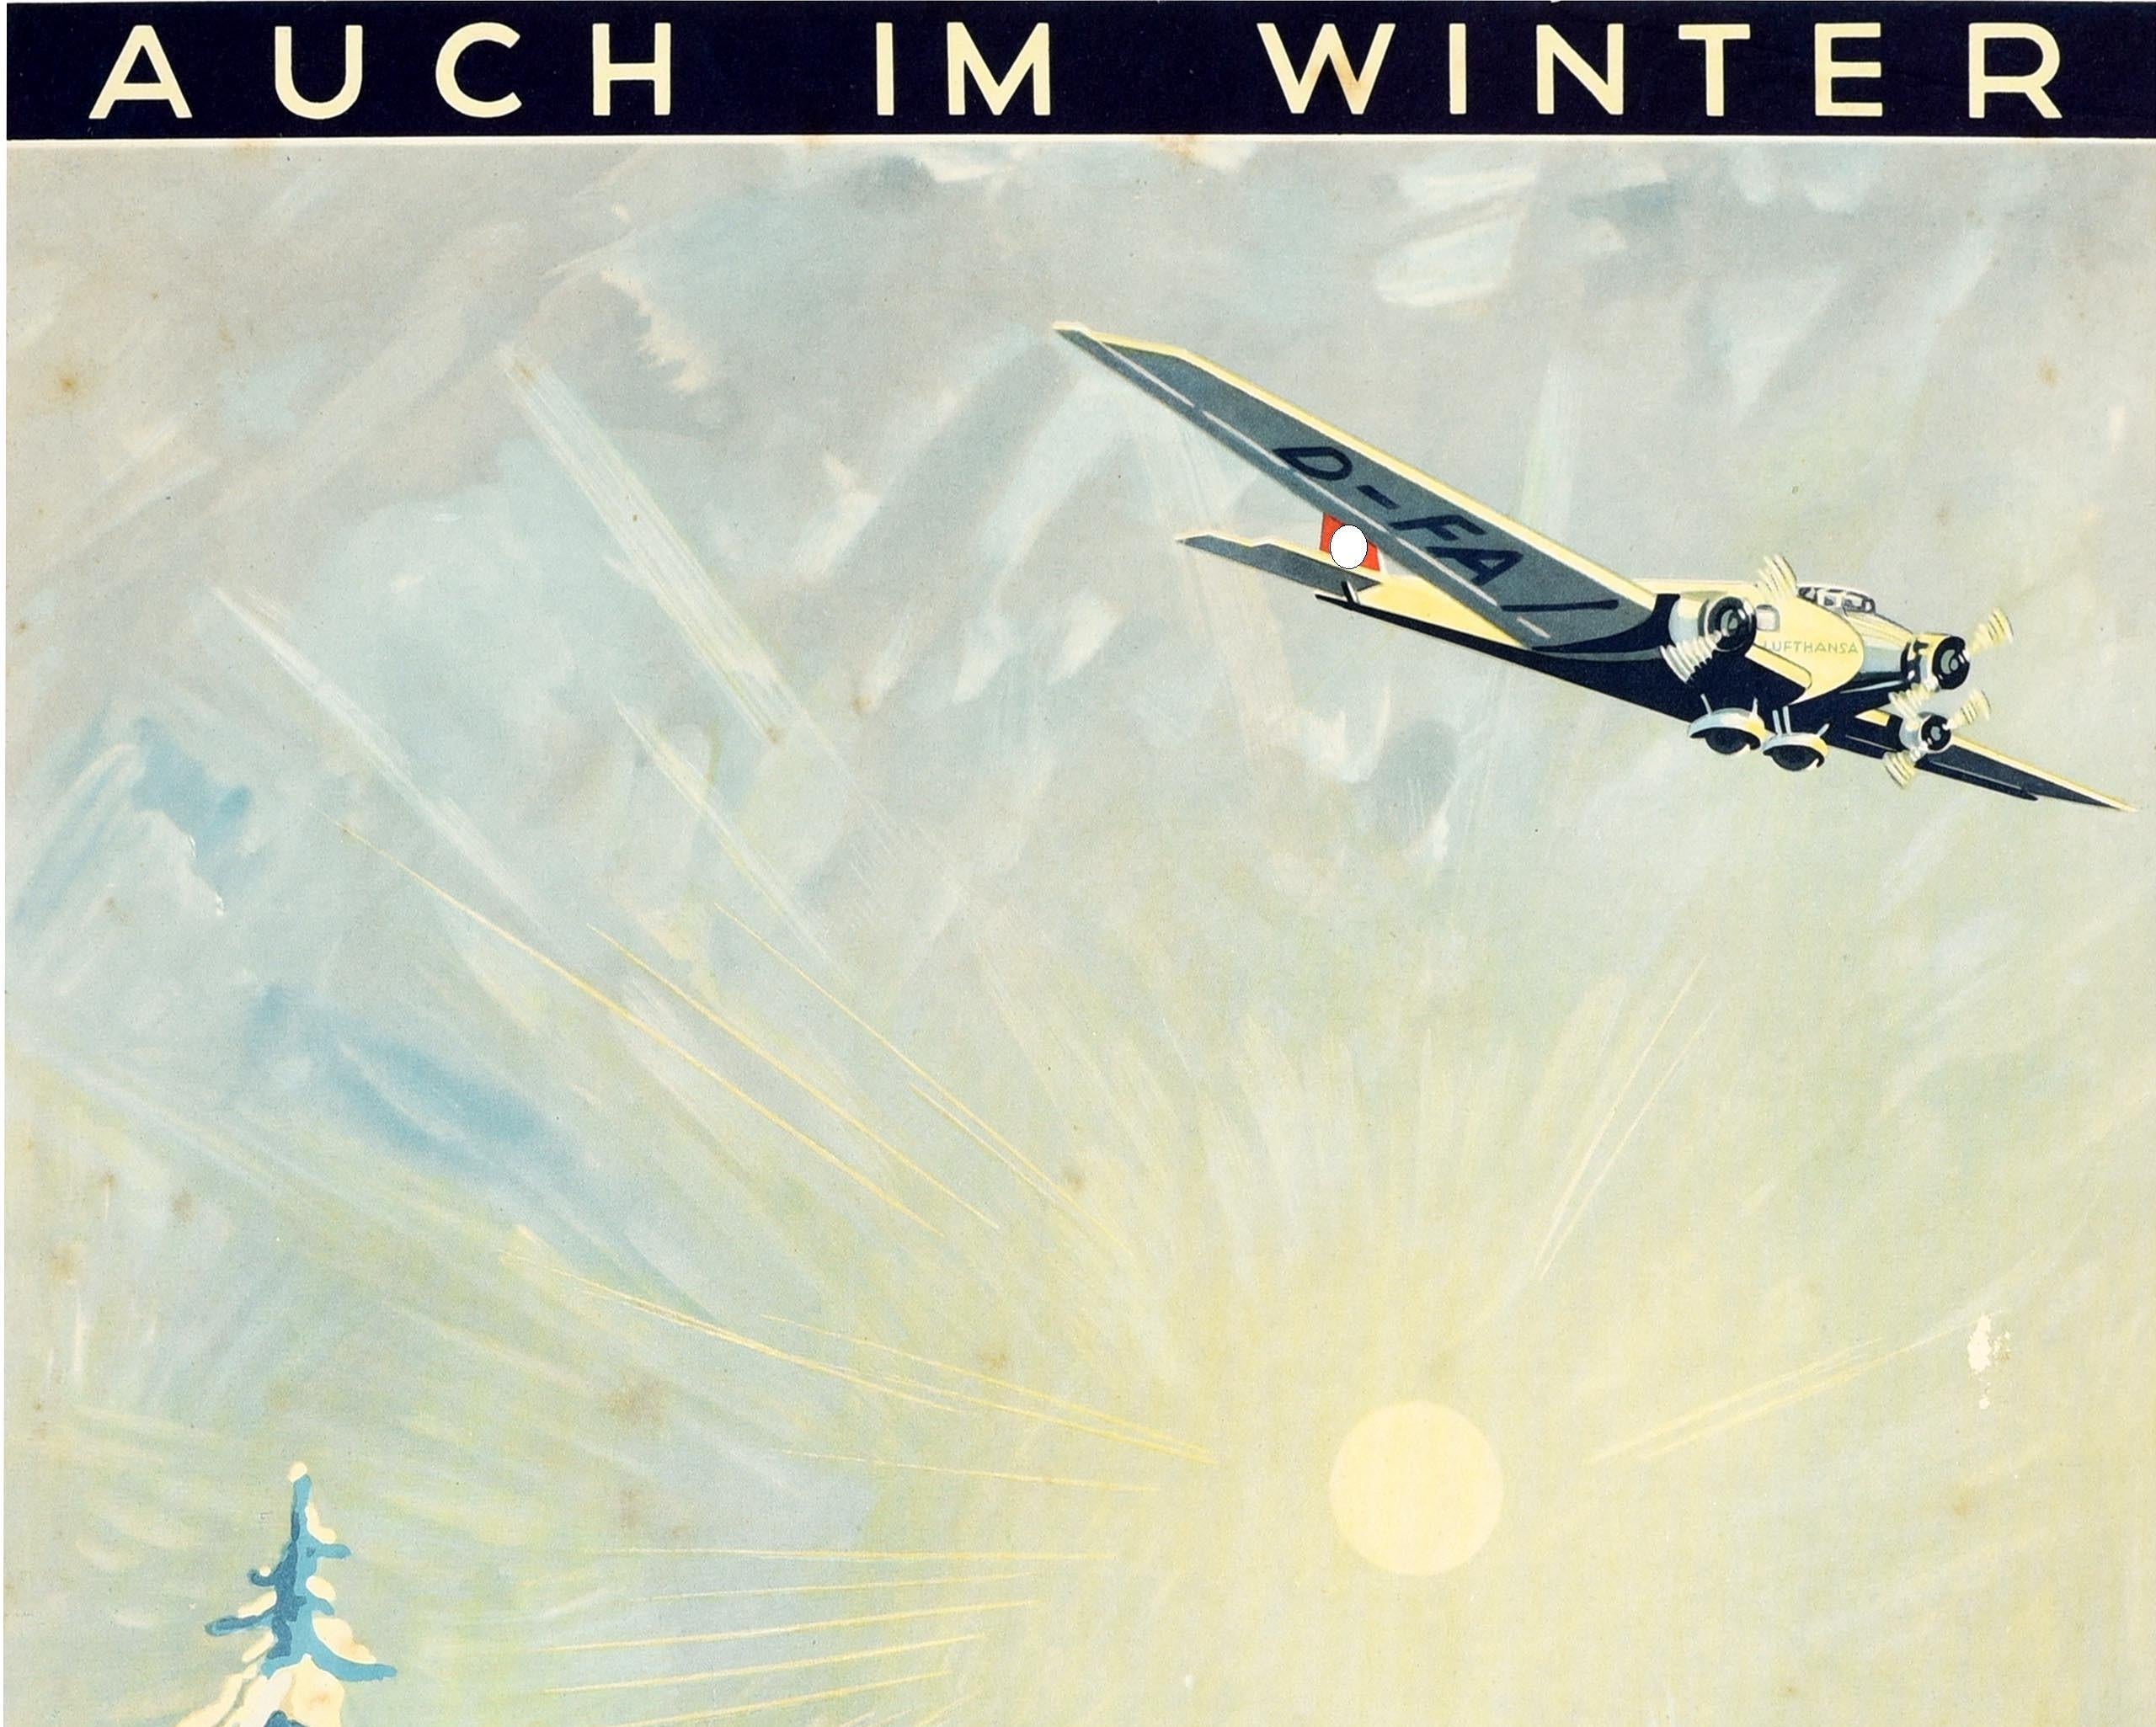 Original Vintage Travel Poster Auch Im Winter Deutsche Lufthansa Also In Winter - Print by Unknown